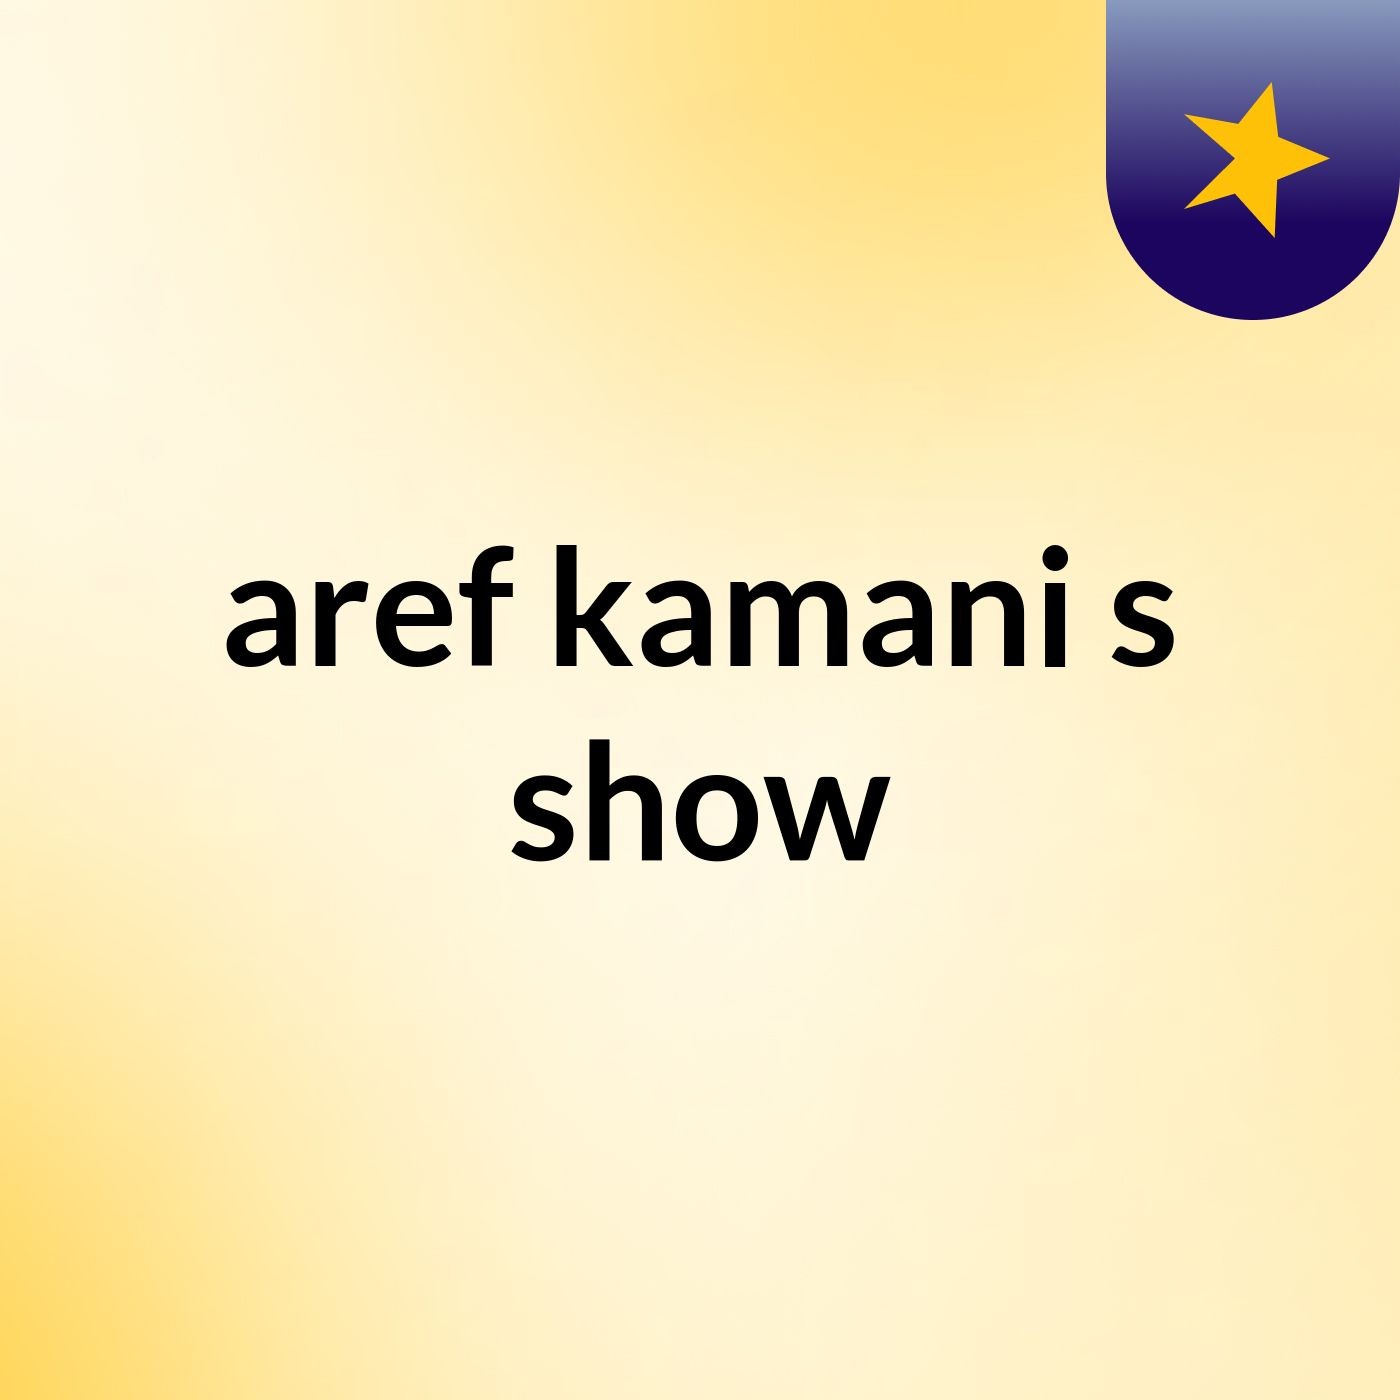 aref kamani's show